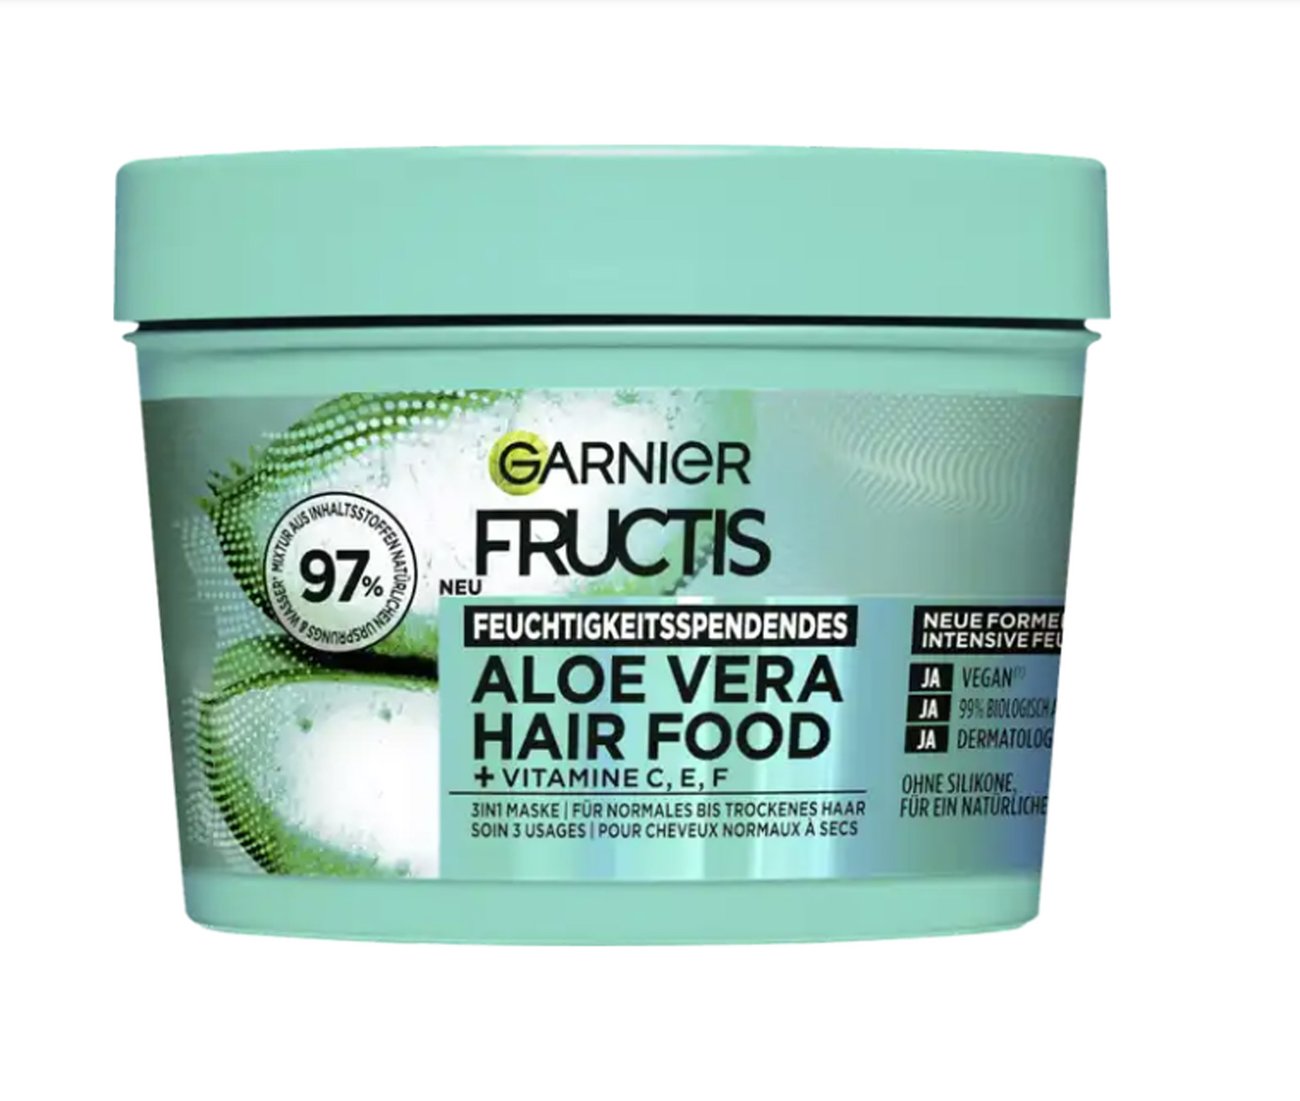 Fructis Haarkur Aloe Vera Hair Food